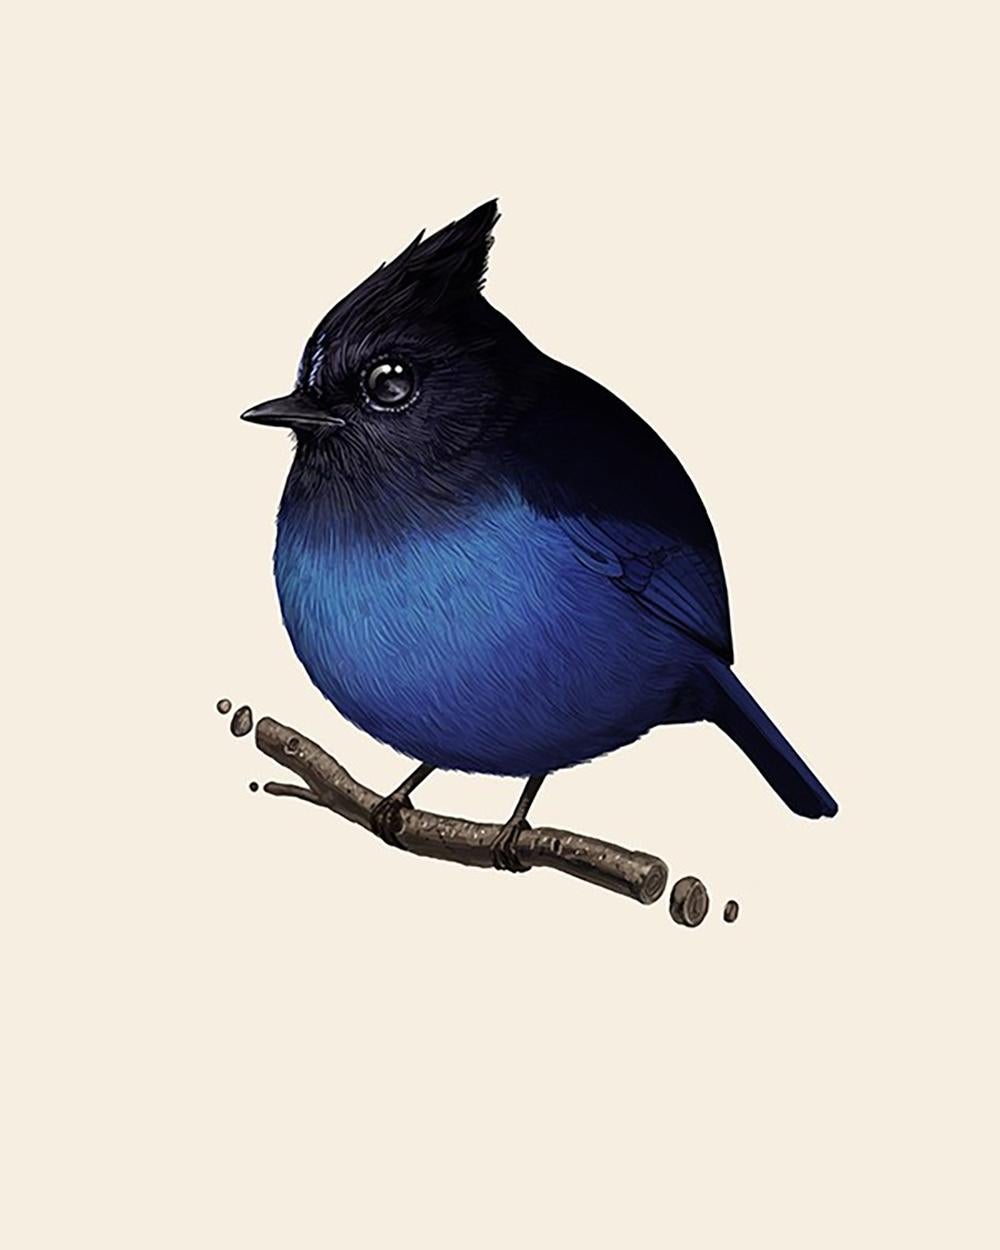 Mike Mitchell - Stellar's Jay - Édition d'artiste - Artiste contemporain

Le geai de Steller (Cyanocitta stelleri) est un oiseau originaire de l'ouest de l'Amérique du Nord, étroitement lié au geai bleu que l'on trouve dans le reste du continent,